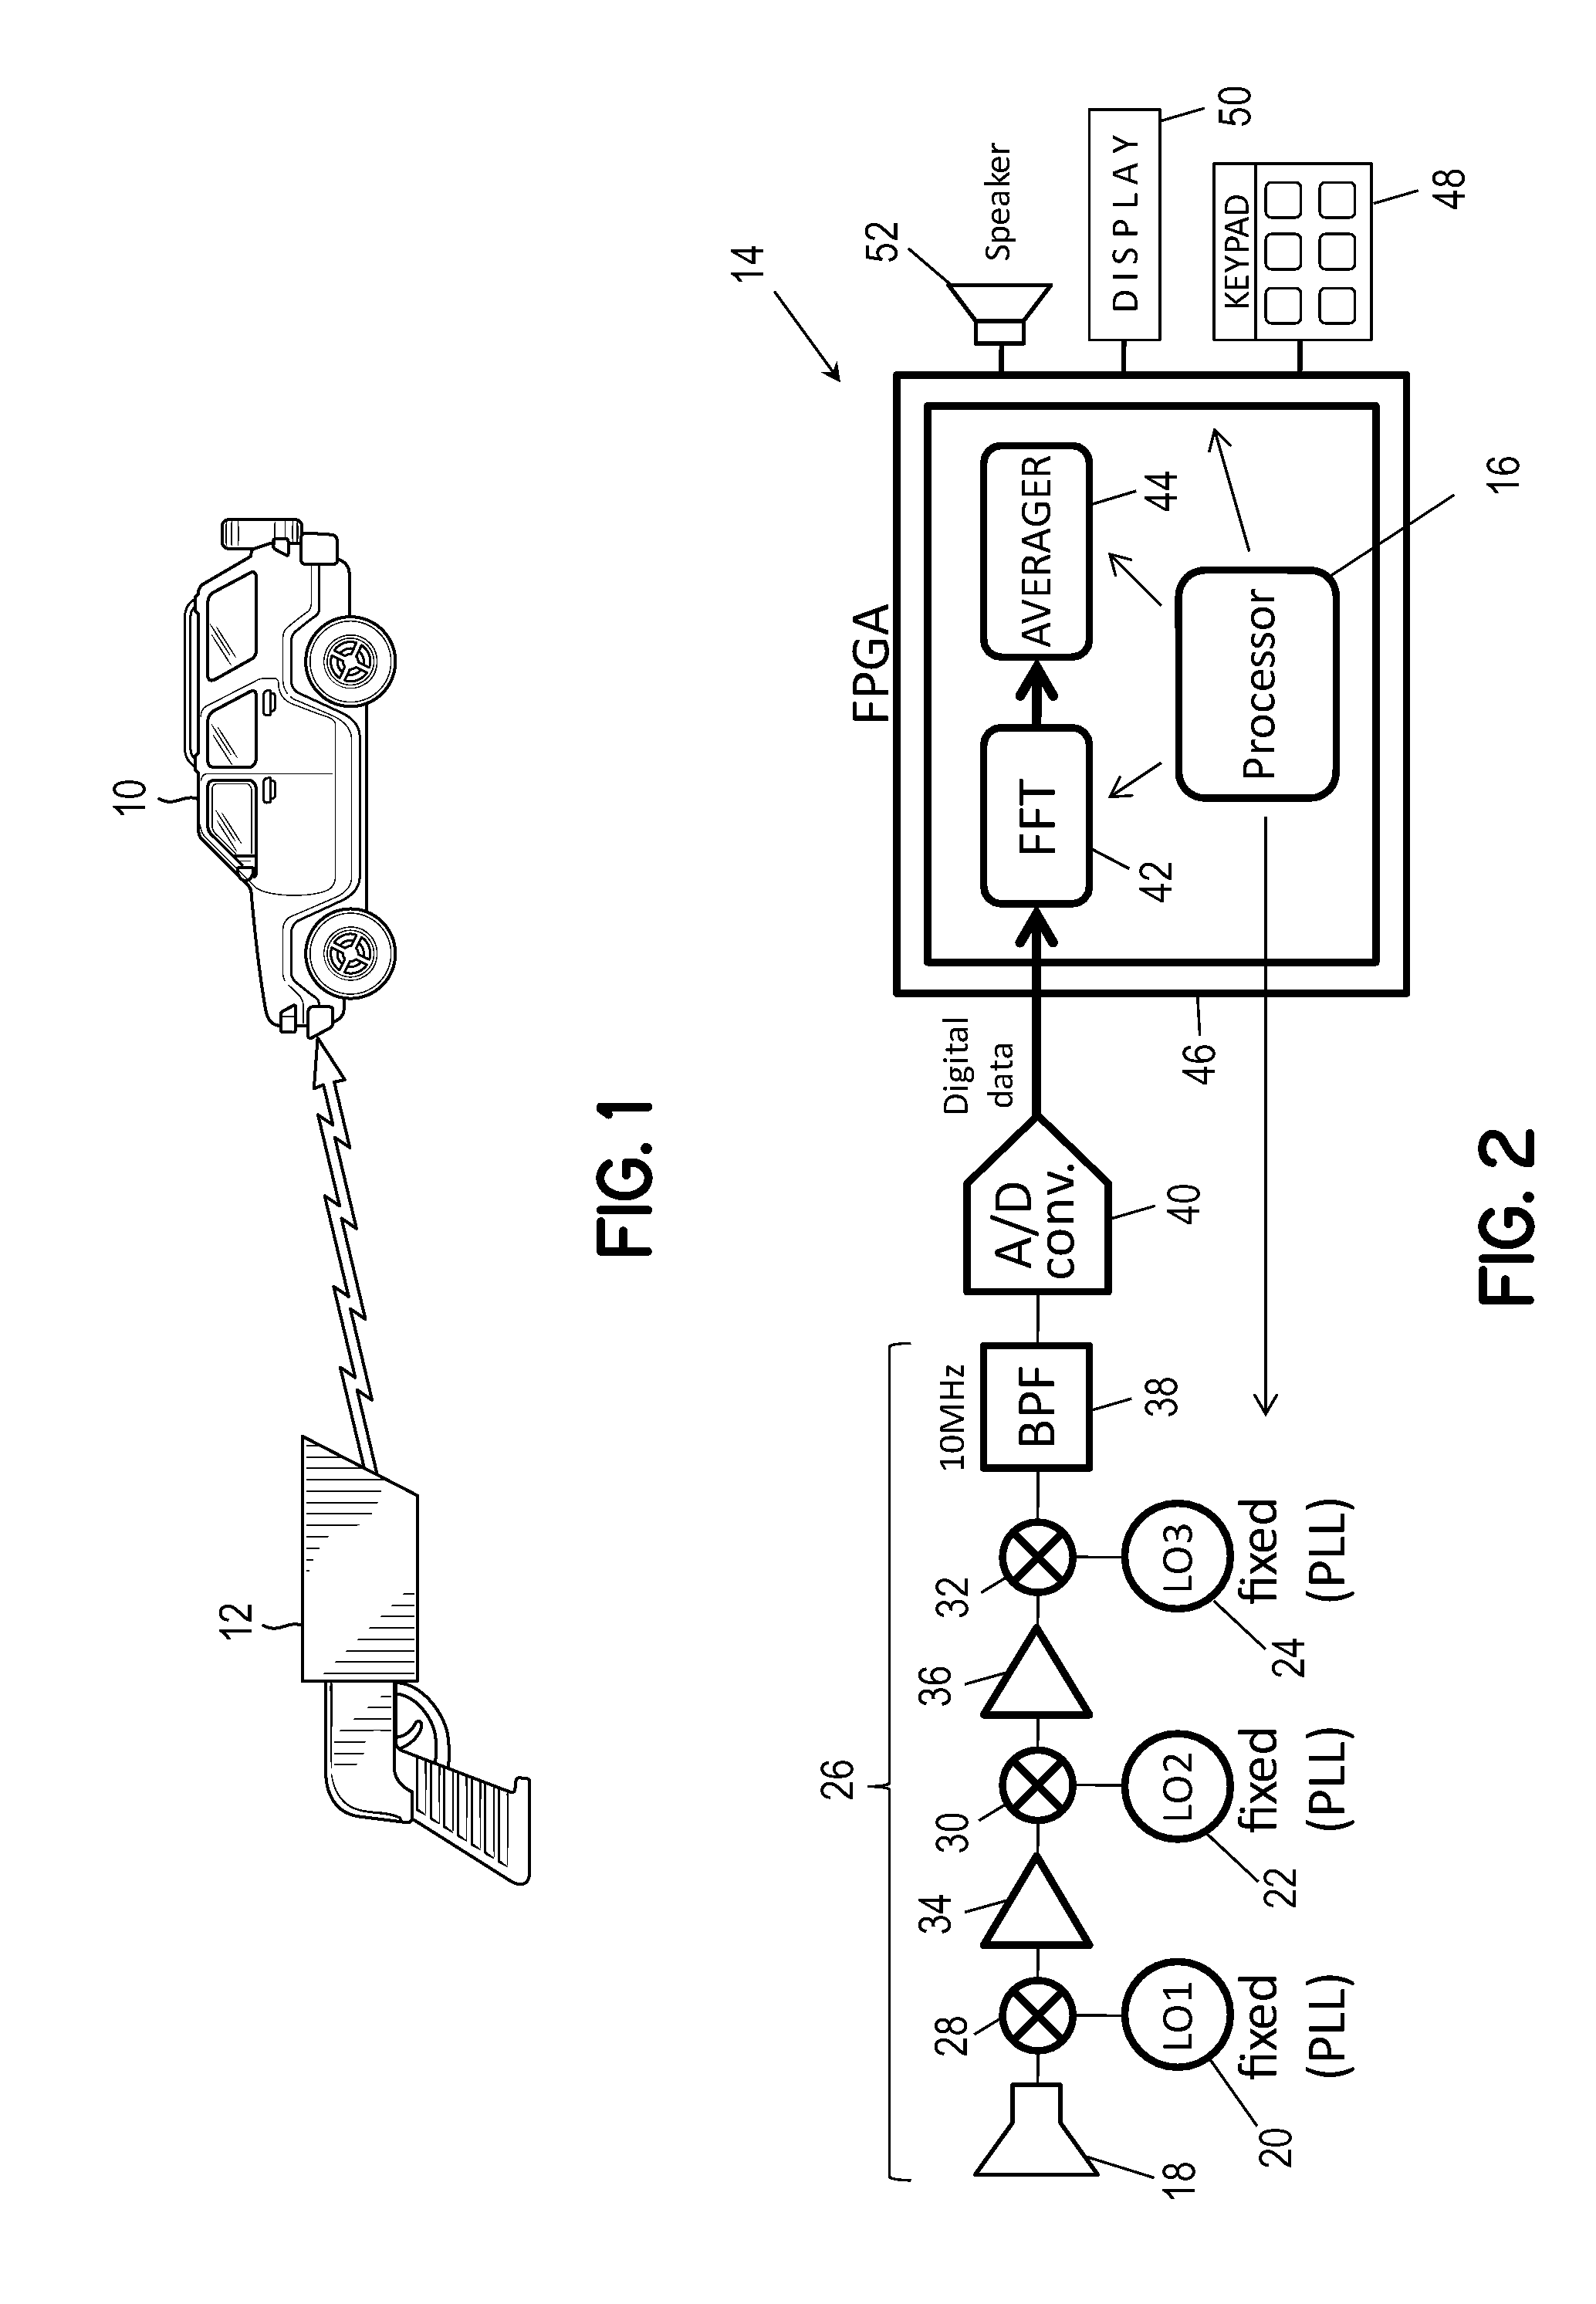 Digital receiver techniques in radar detectors